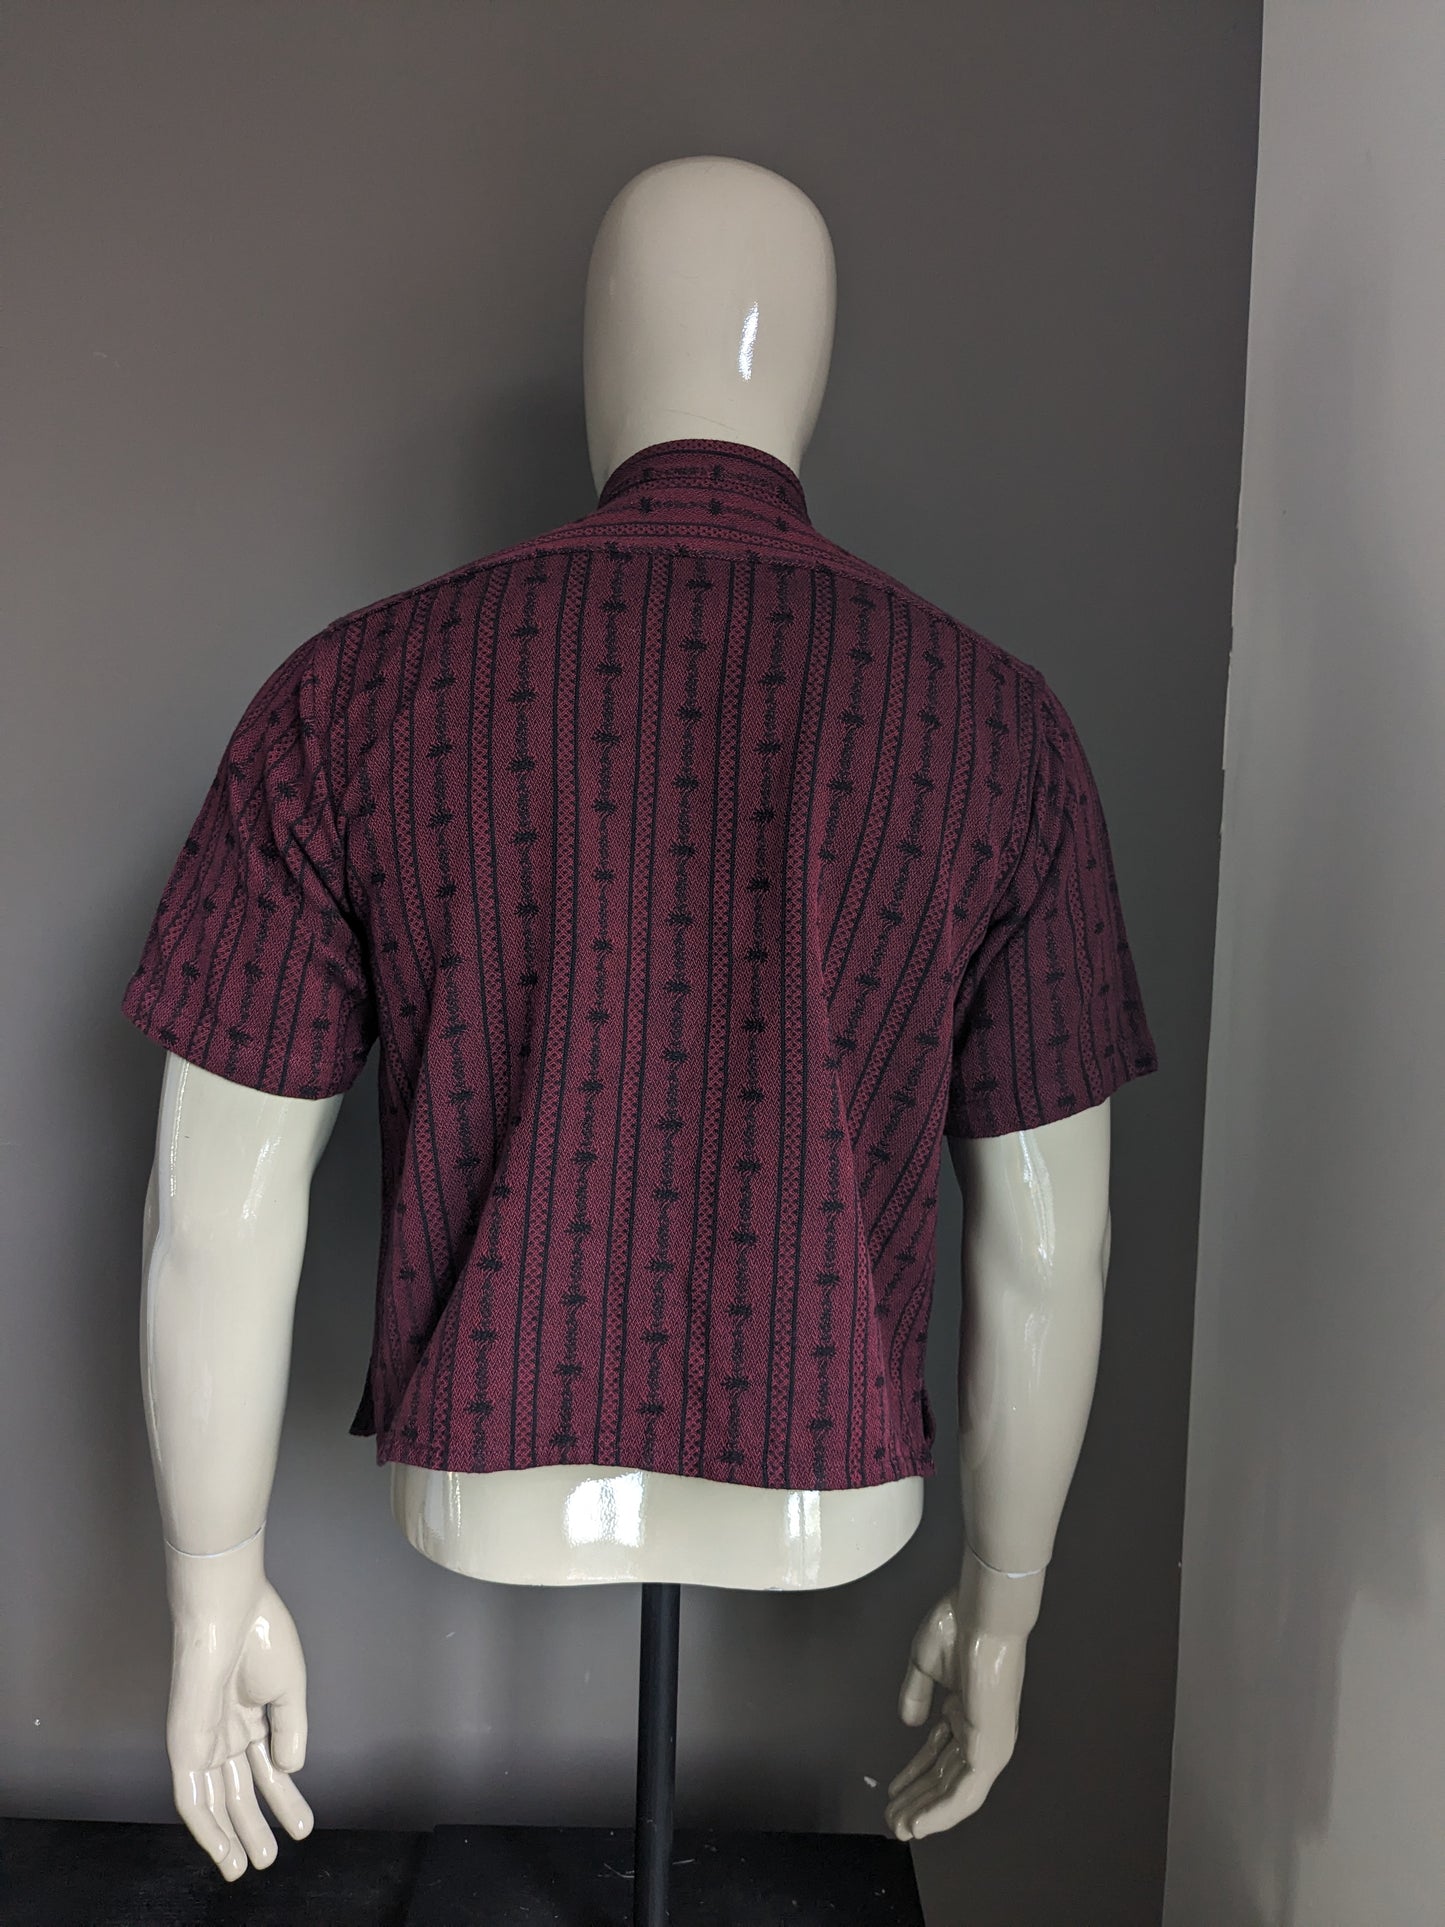 Vintage Atrium shirt met knoopjes en mao / boeren- / opstaande kraag. Bordeaux Zwart gekleurd. Maat S / M.